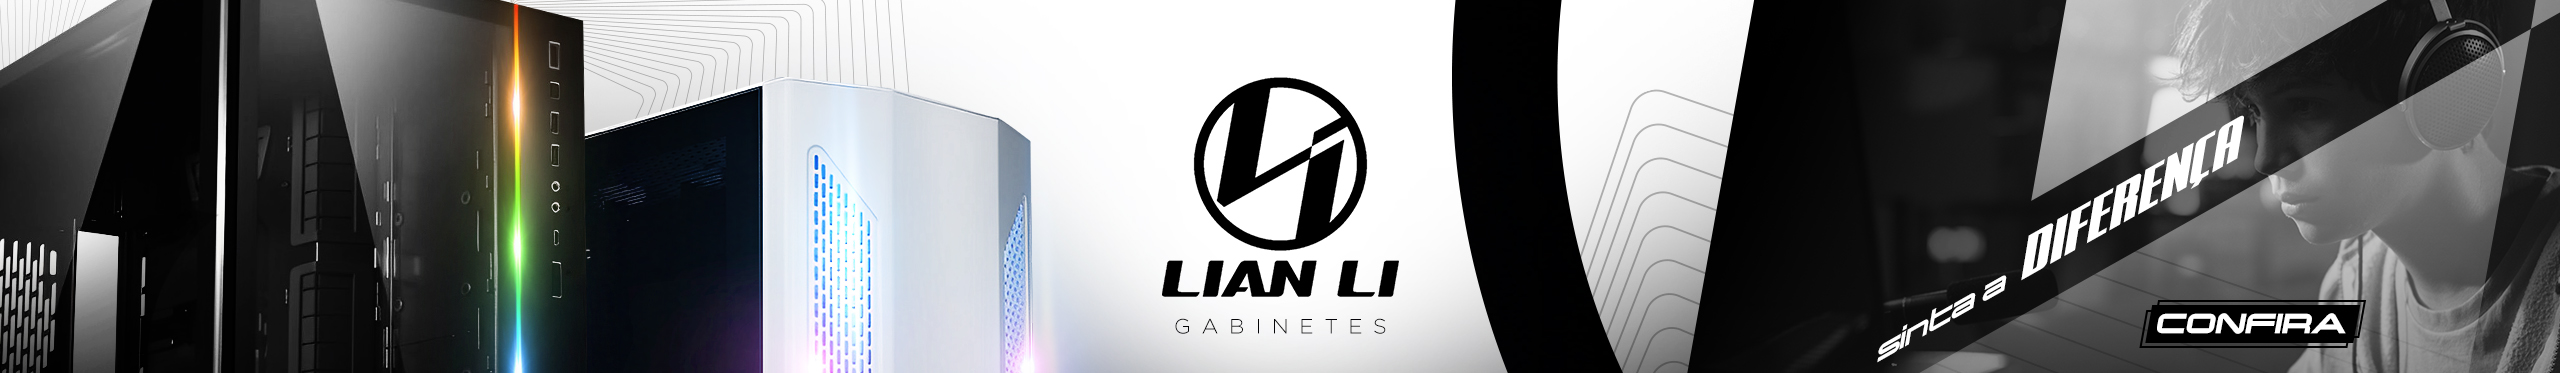 Gabinetes Lian Li | Seu setup merece o melhor. Clica!